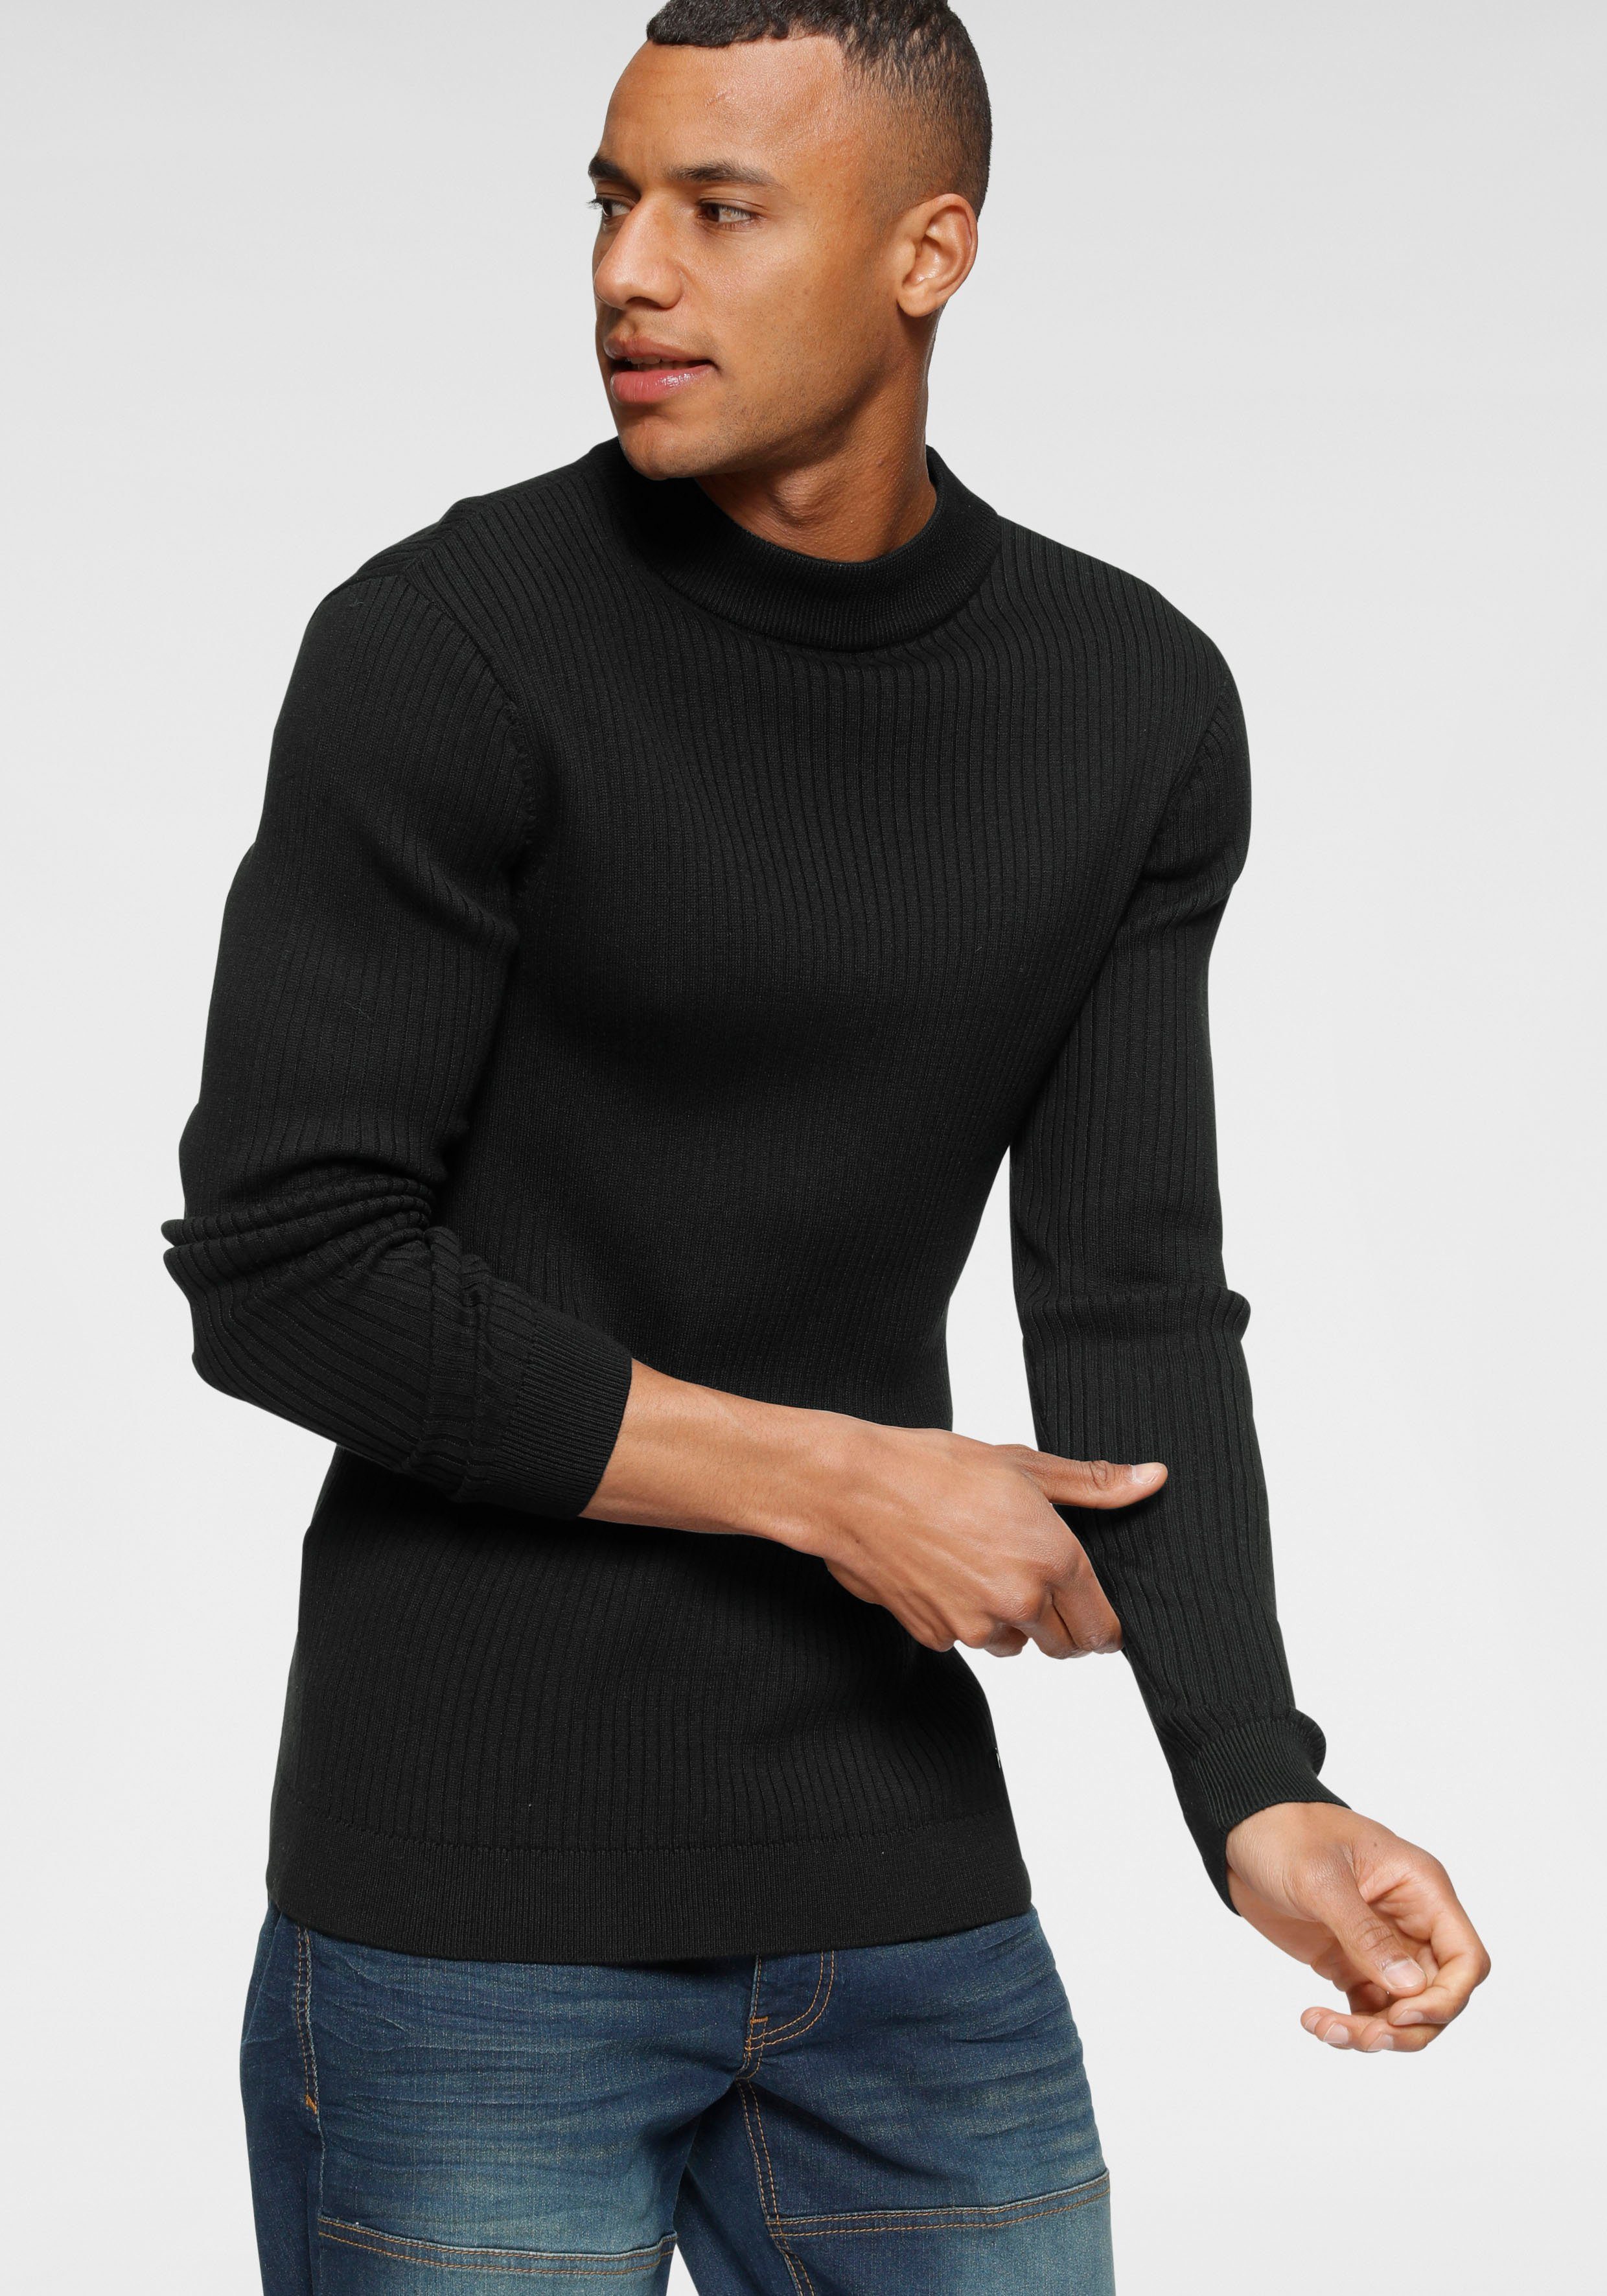 Herren Pullover in schwarz online kaufen | OTTO